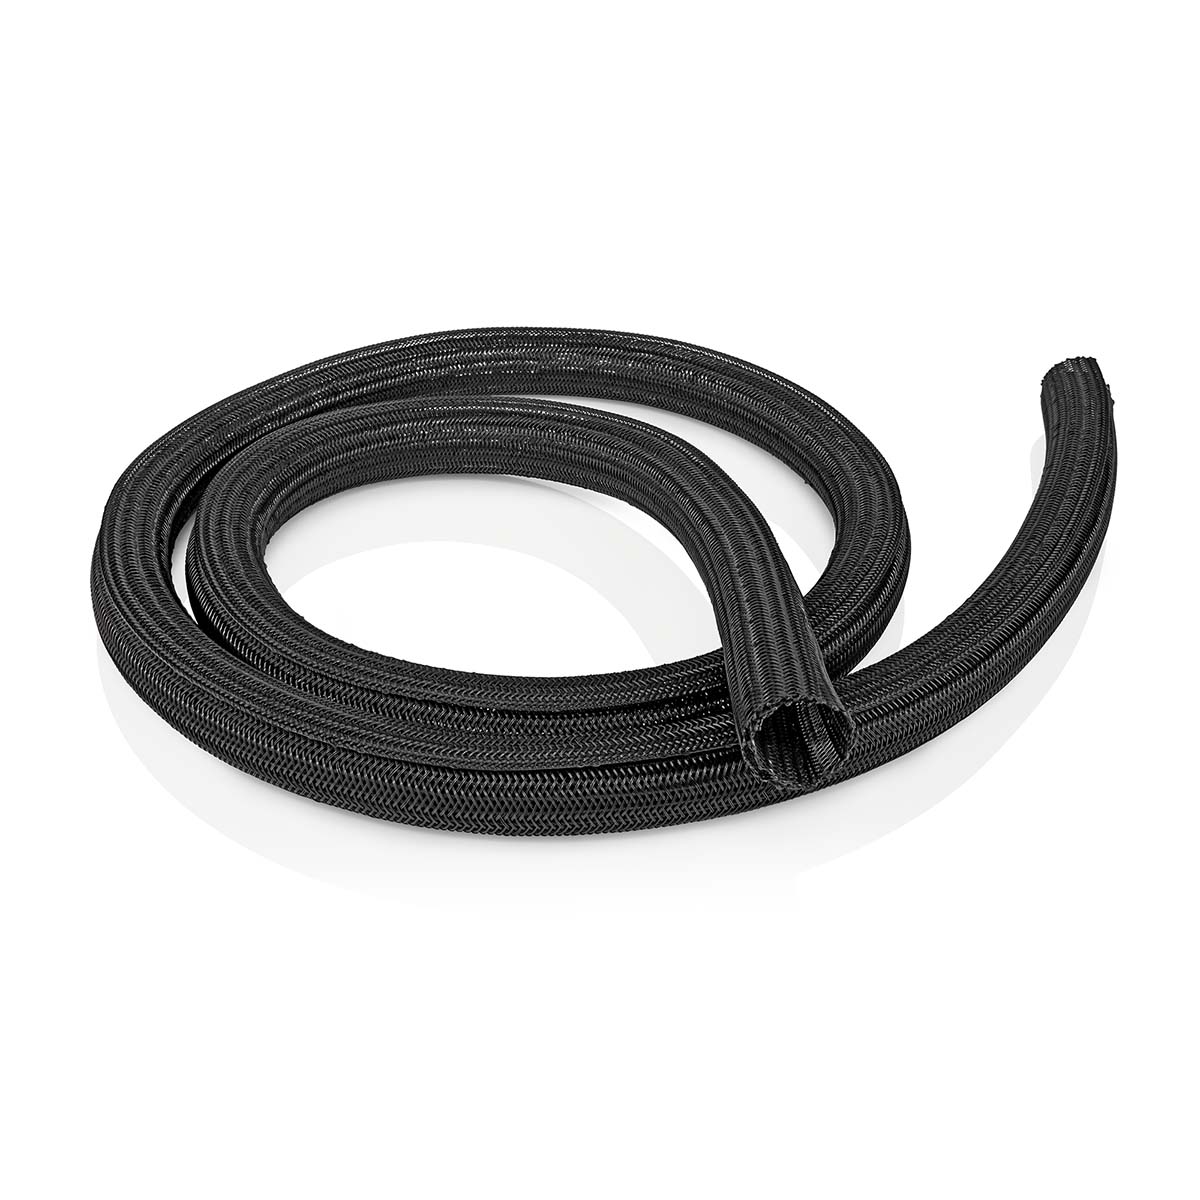 Cable management | Pouzdro | 2.00 m | 1 kusů | Maximální tloušťka kabelu: 30 mm | Nylon | Černá